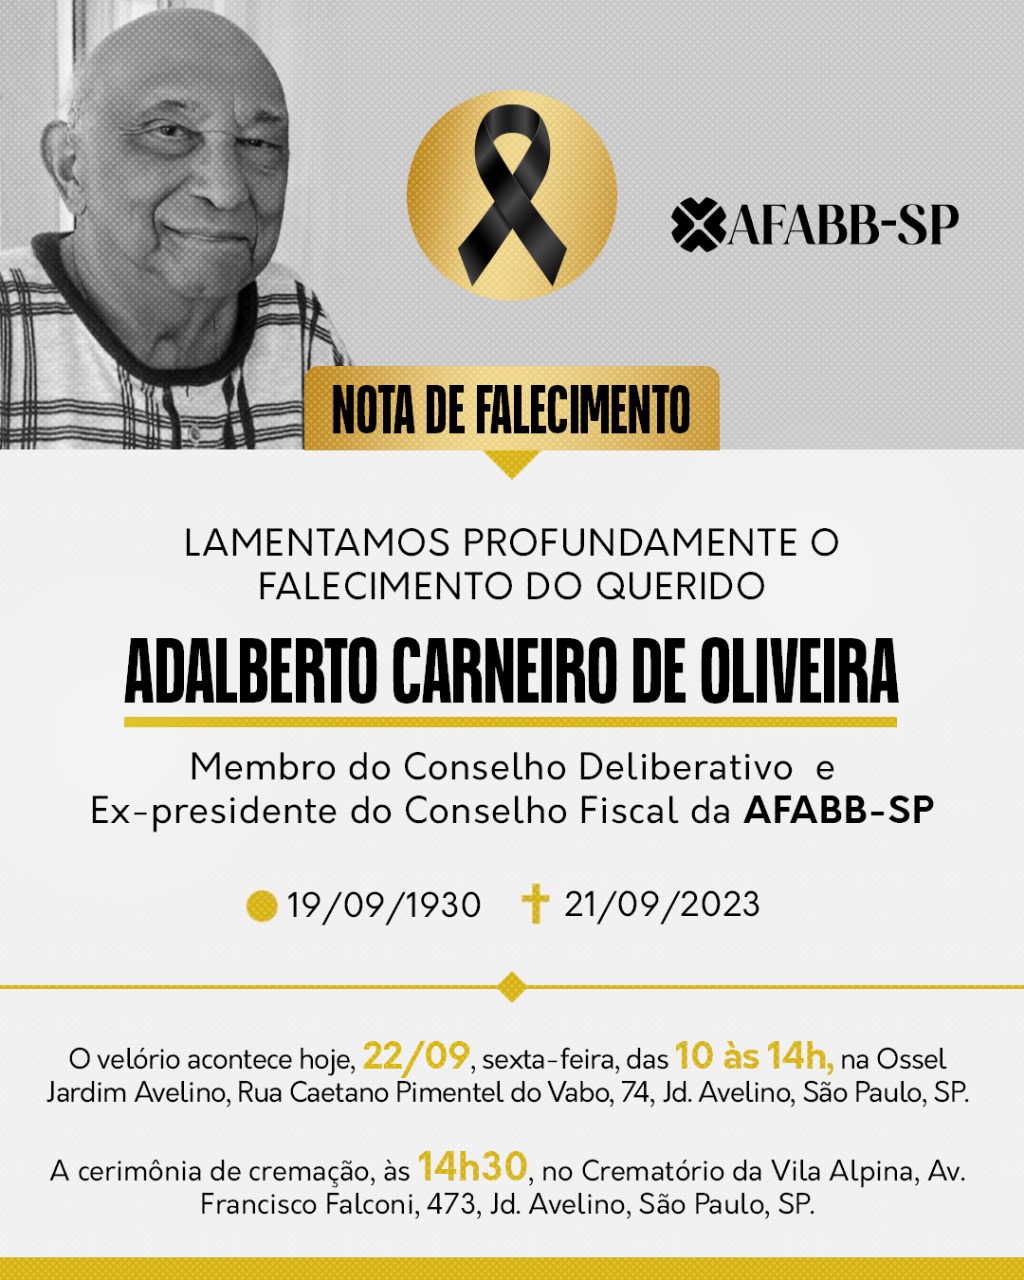 NOTA DE FALECIMENTO – Adalberto Carneiro de Oliveira